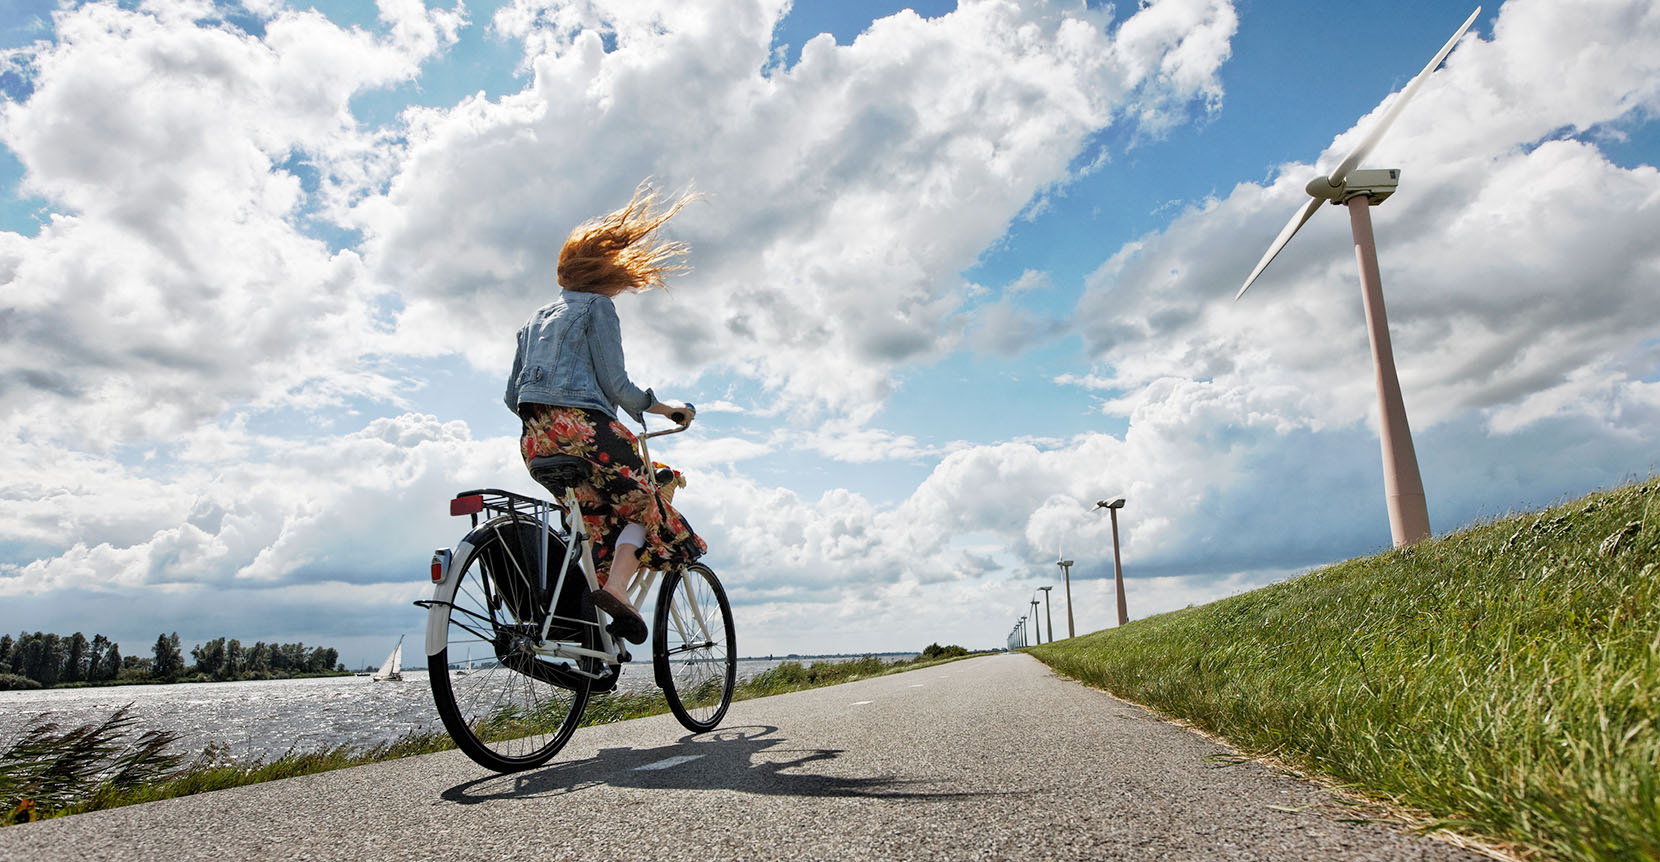 Vrouw rijdt met fiets op een weg met windmolens ernaast